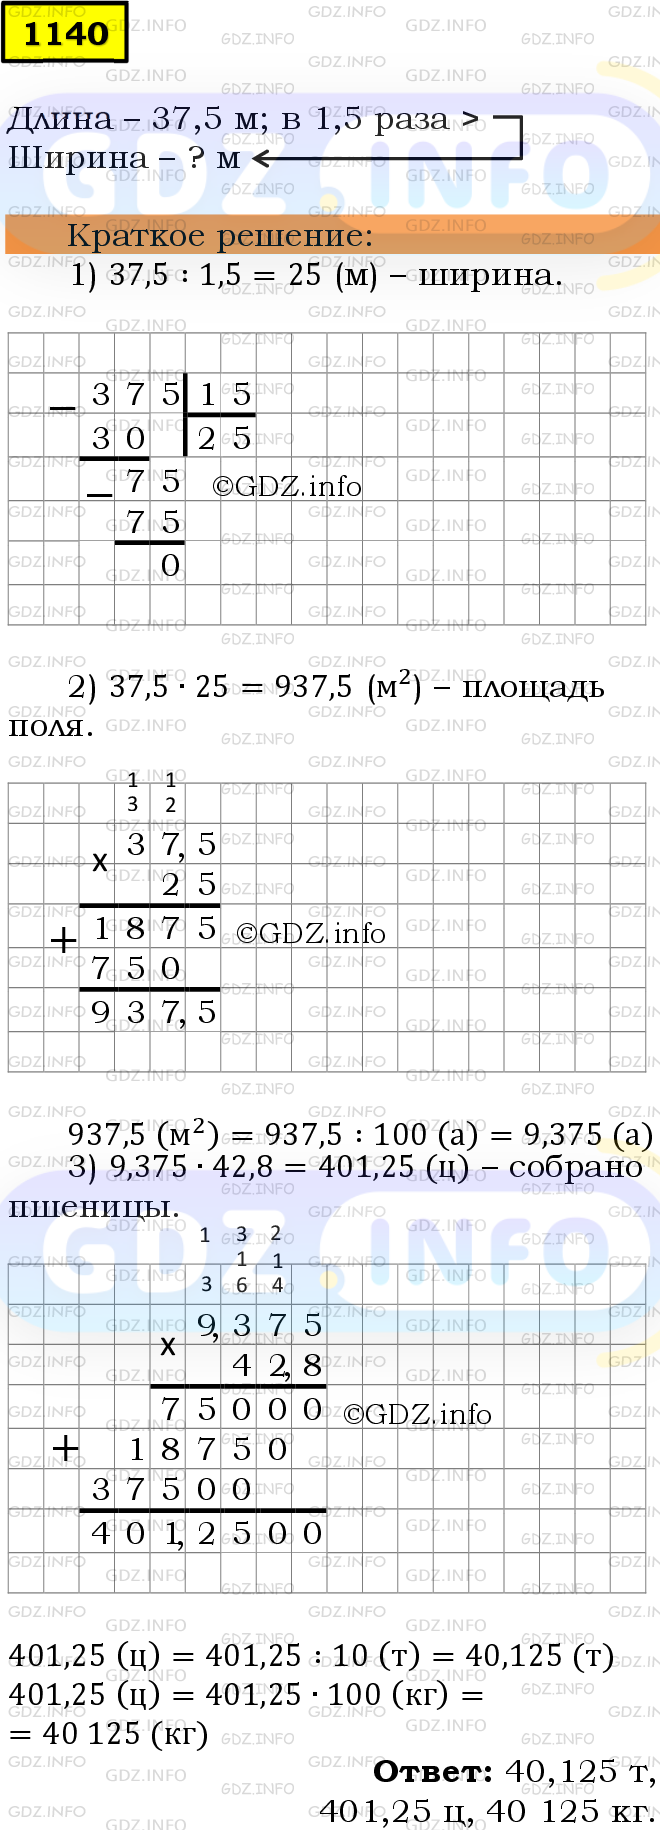 Фото решения 6: Номер №1140 из ГДЗ по Математике 5 класс: Мерзляк А.Г. г.